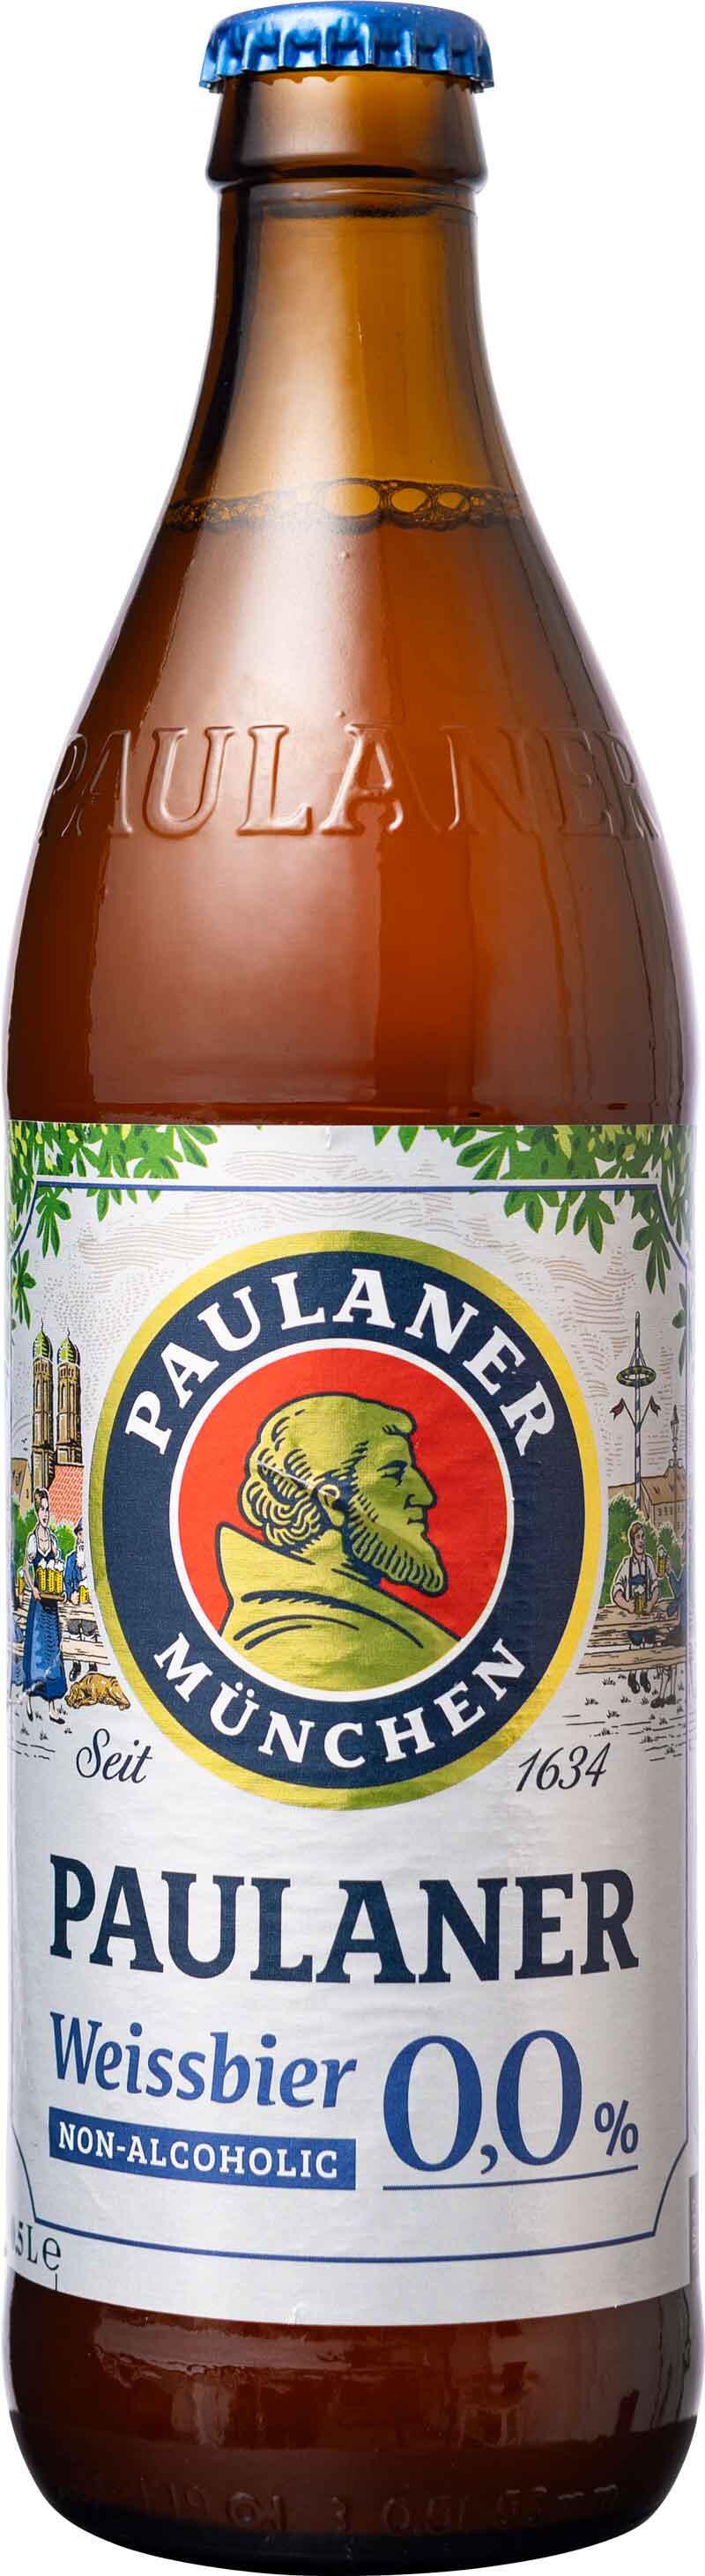 Weissbier 0,0 Paulaner